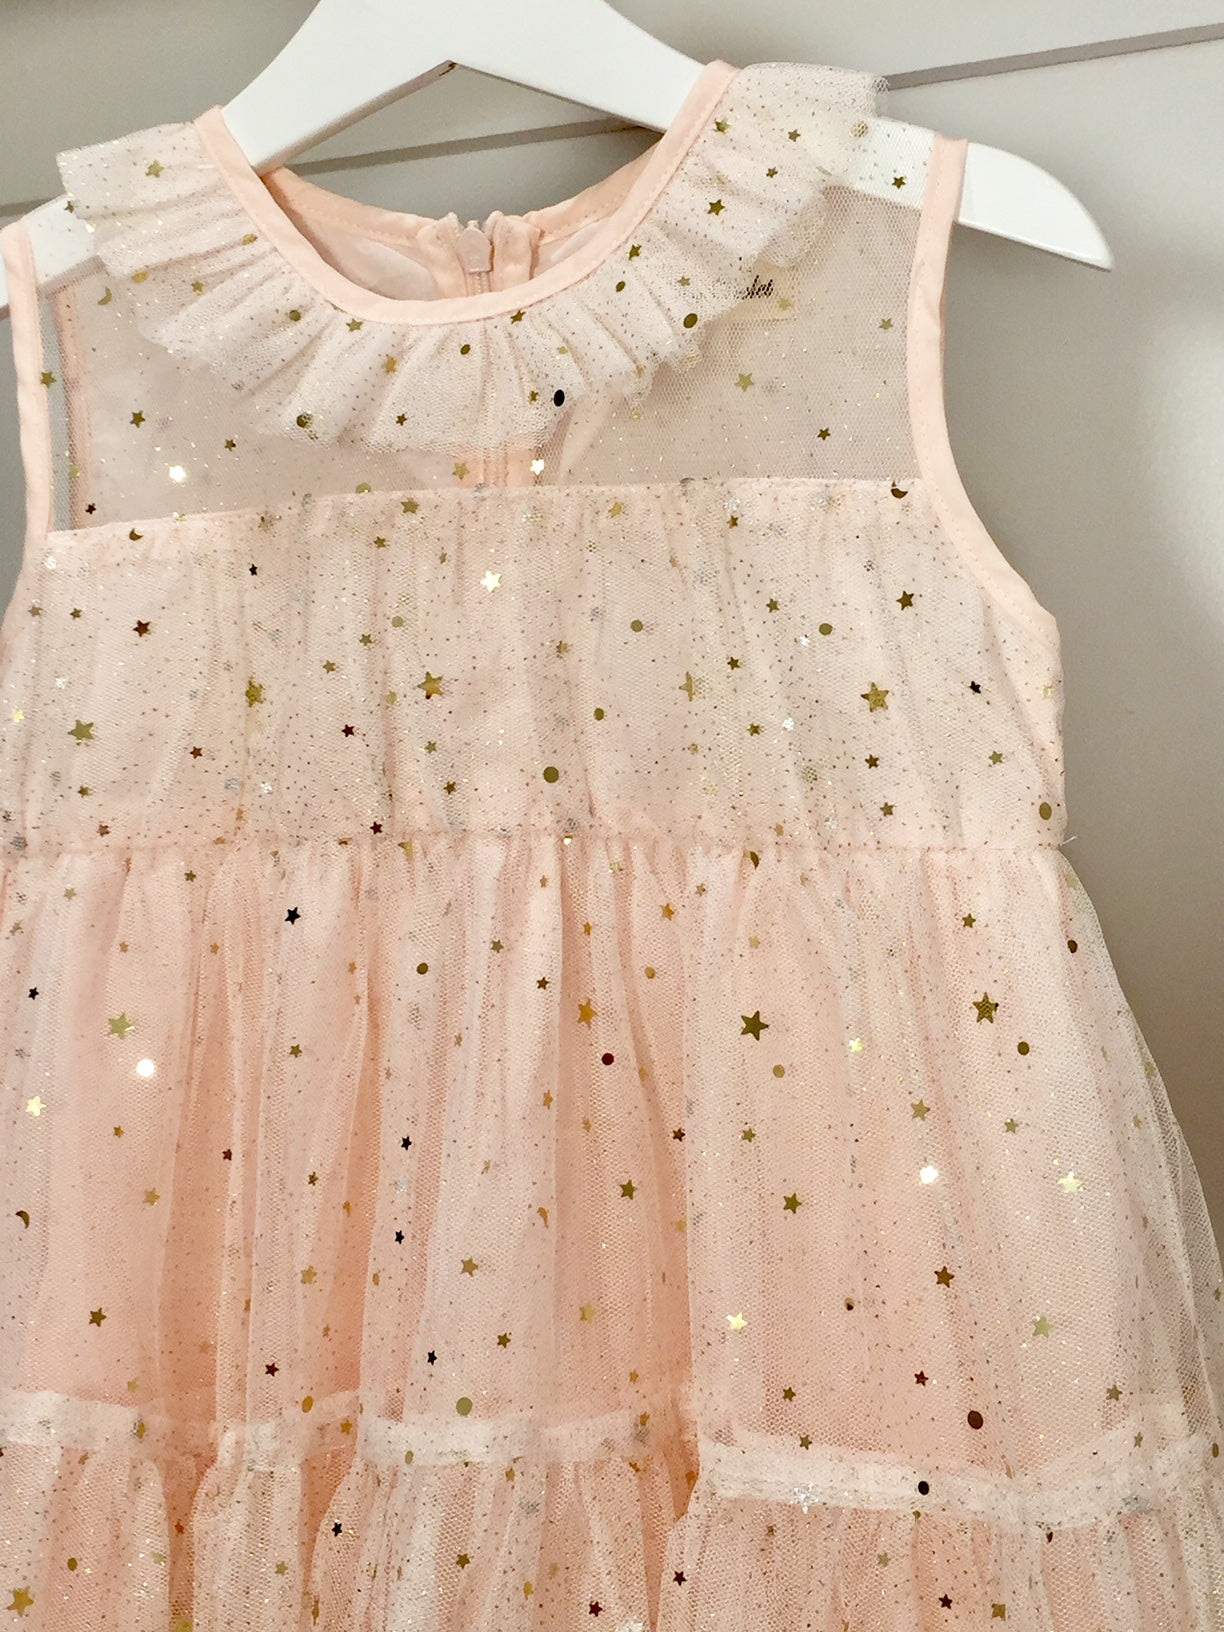 Twinkle Twinkle Little Star dress . Pale pink.